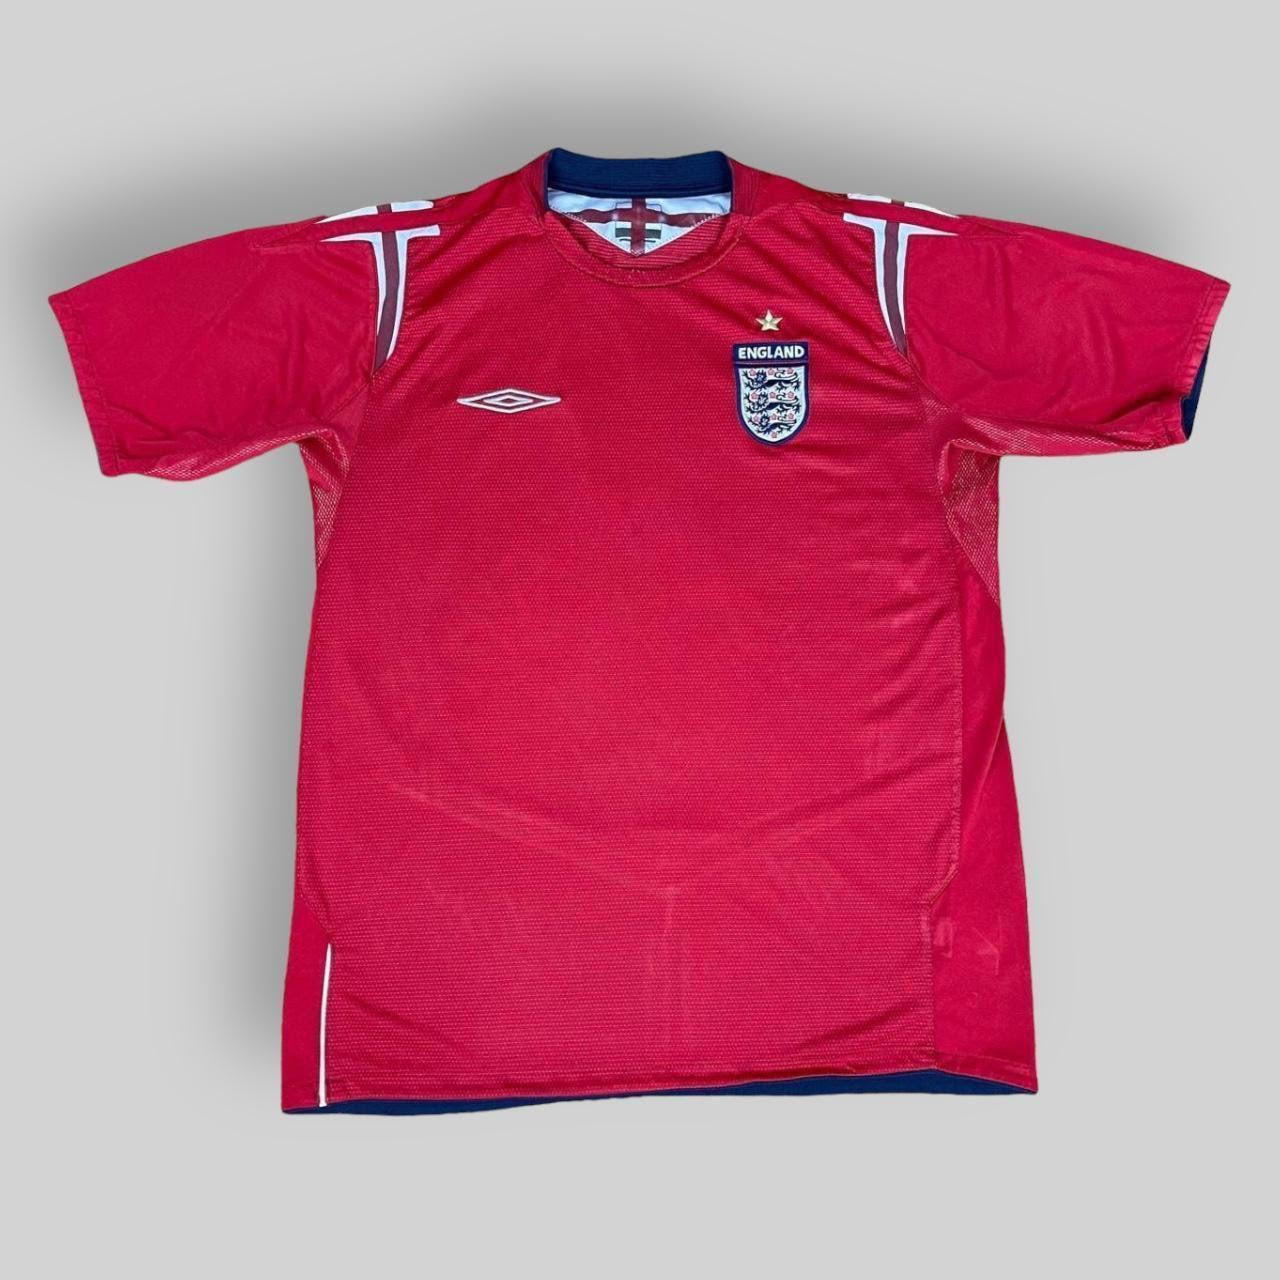 Umbro England 2004/06 Away Shirt (Medium)